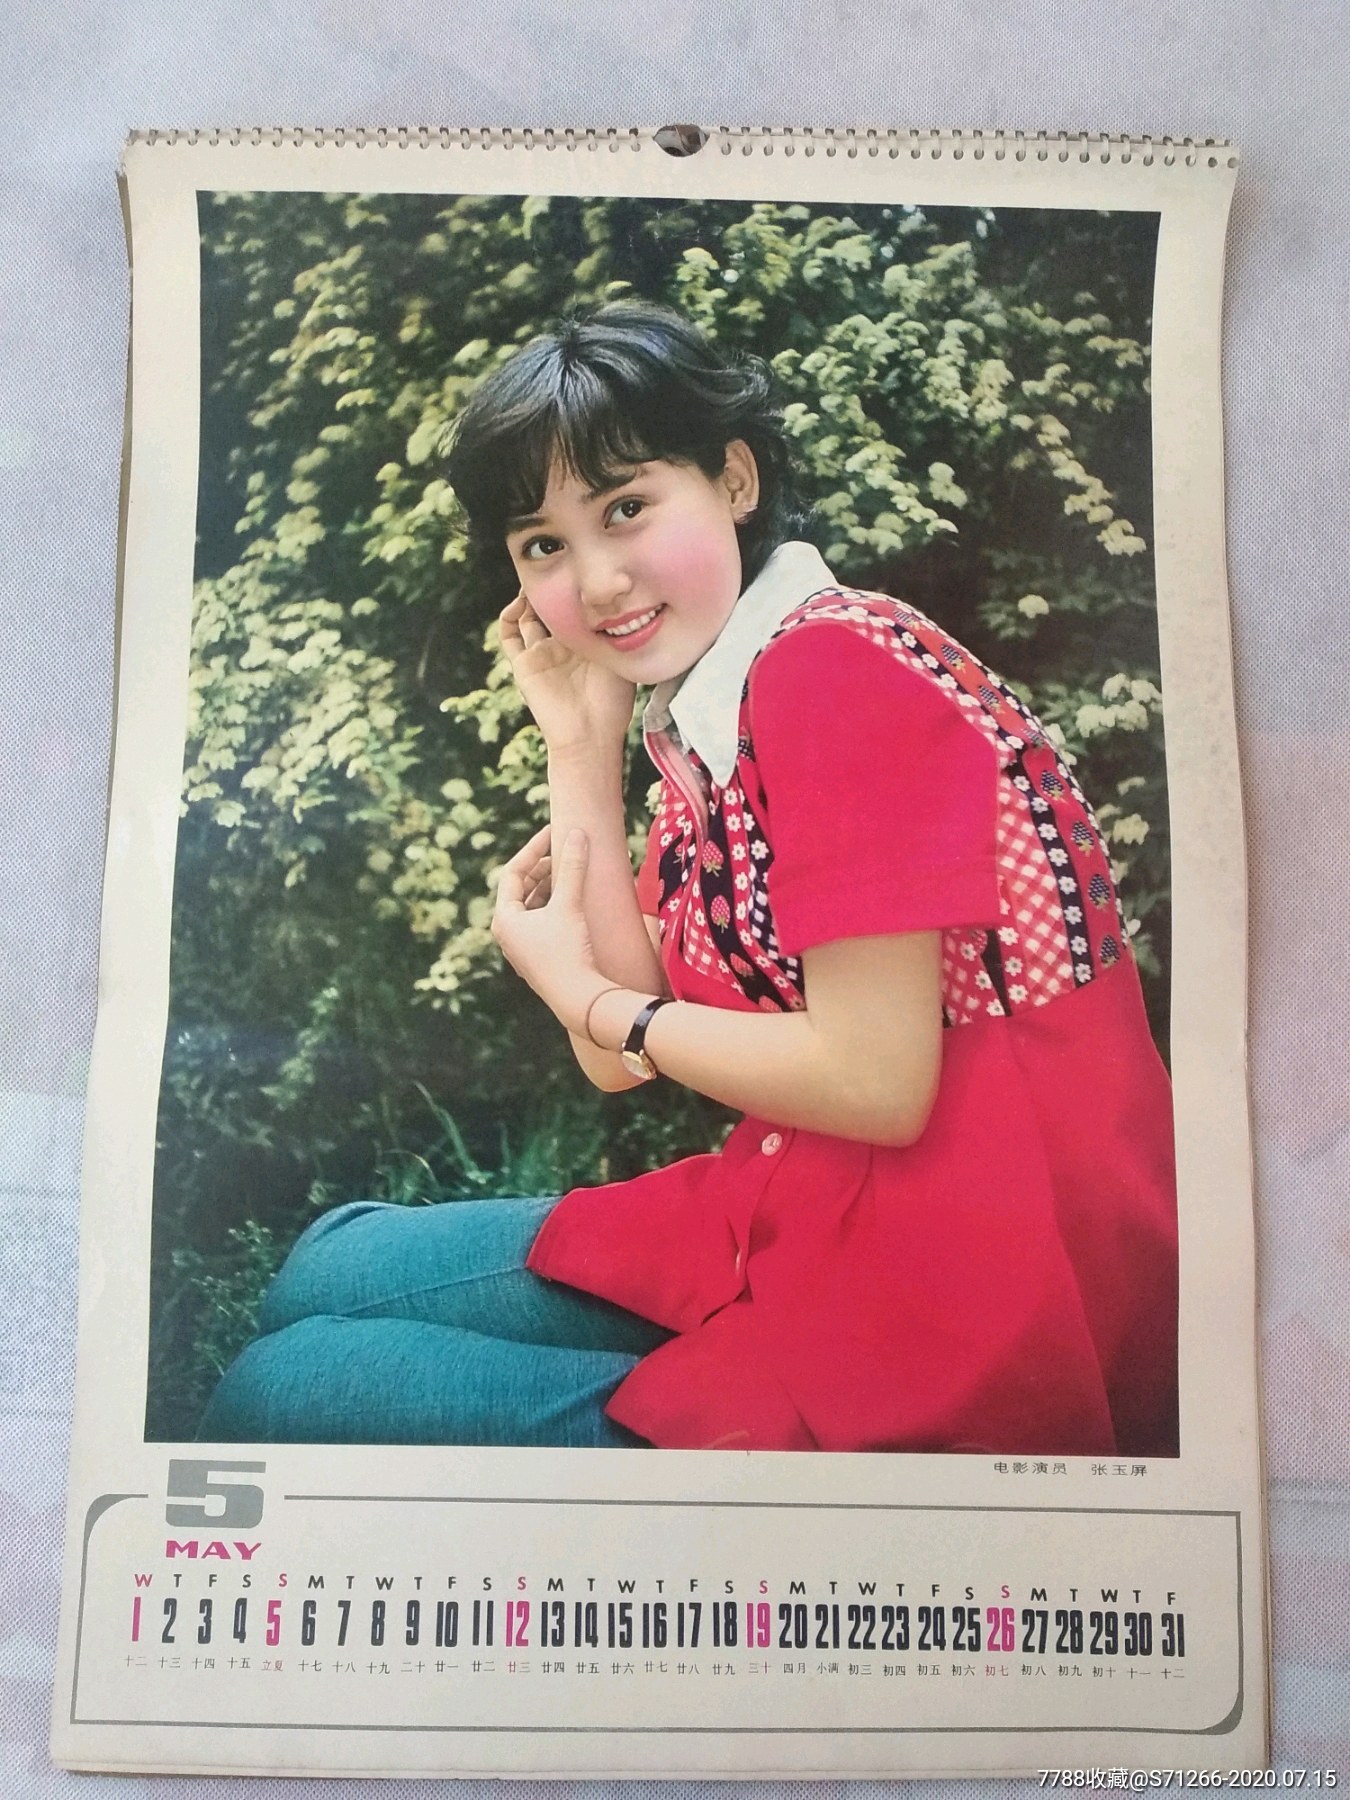 1985/明星(13全)